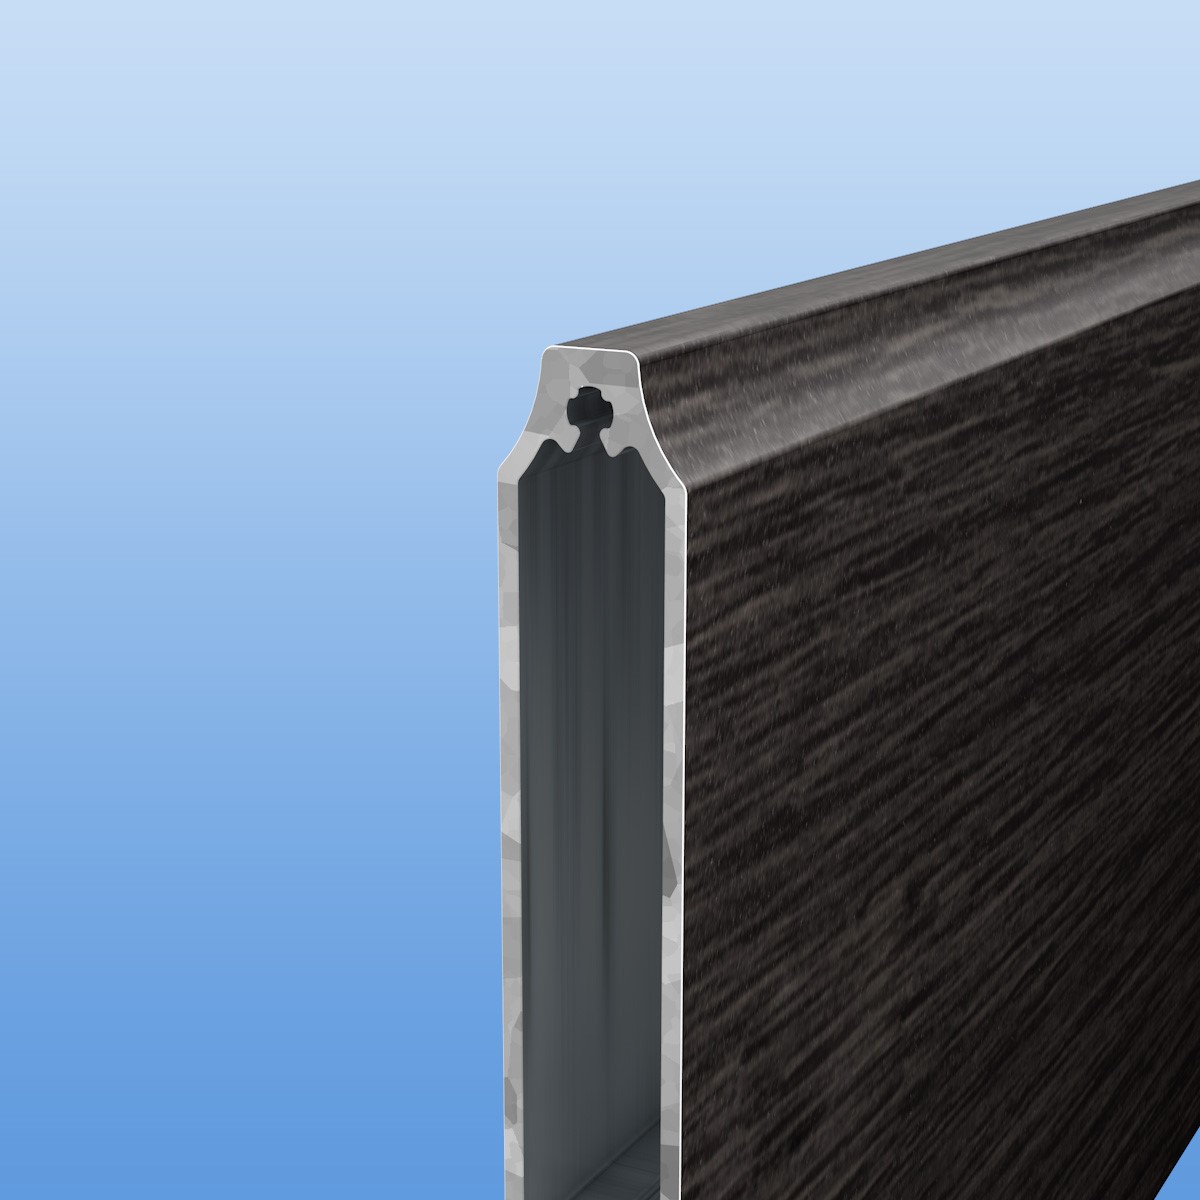 Balkonbretter aus Aluminium 150 mm breit in Holzoptik "Wenge" - konkav